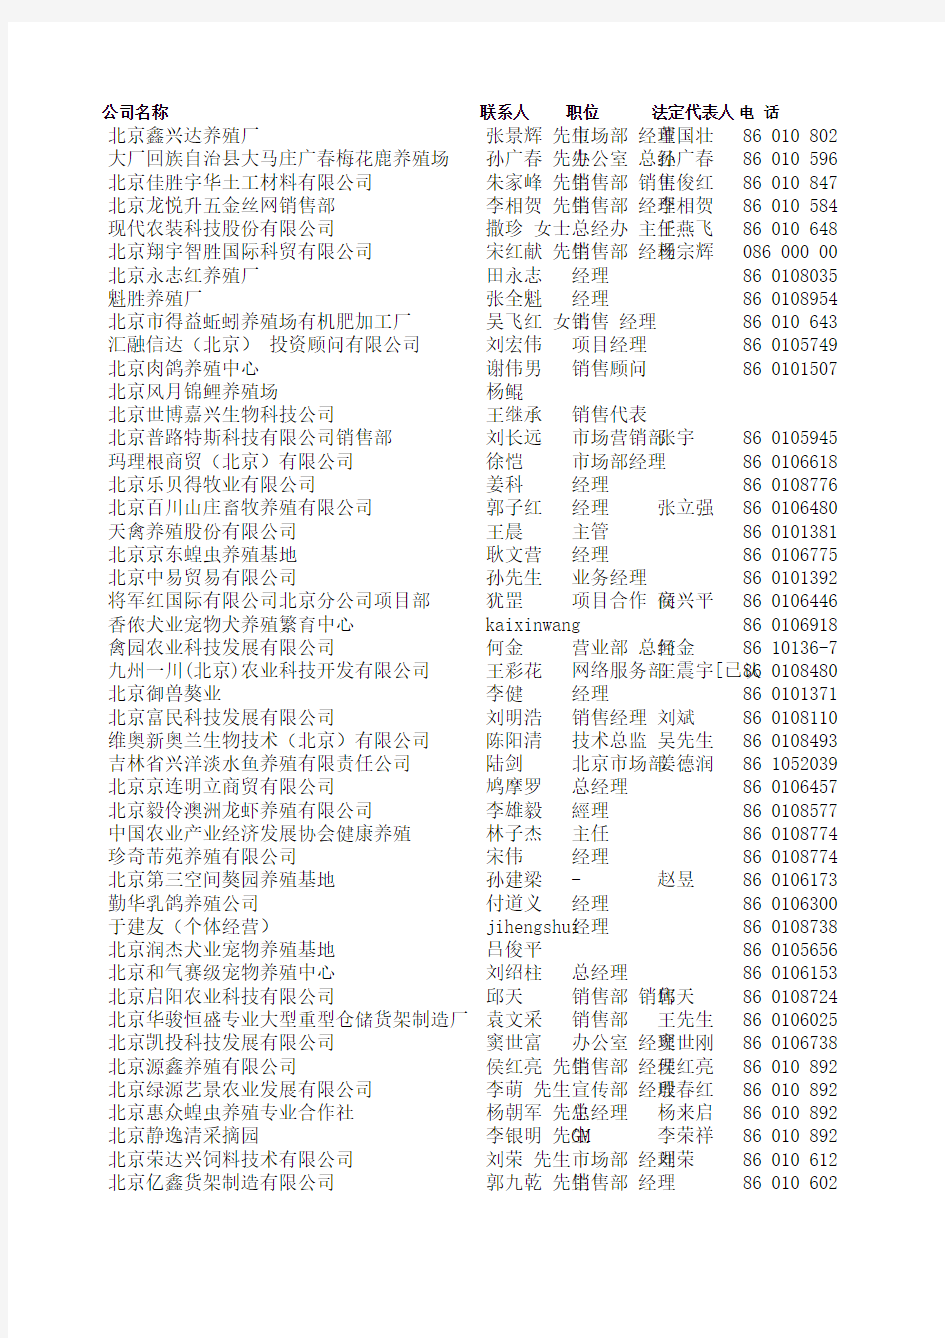 北京市养殖行业名录